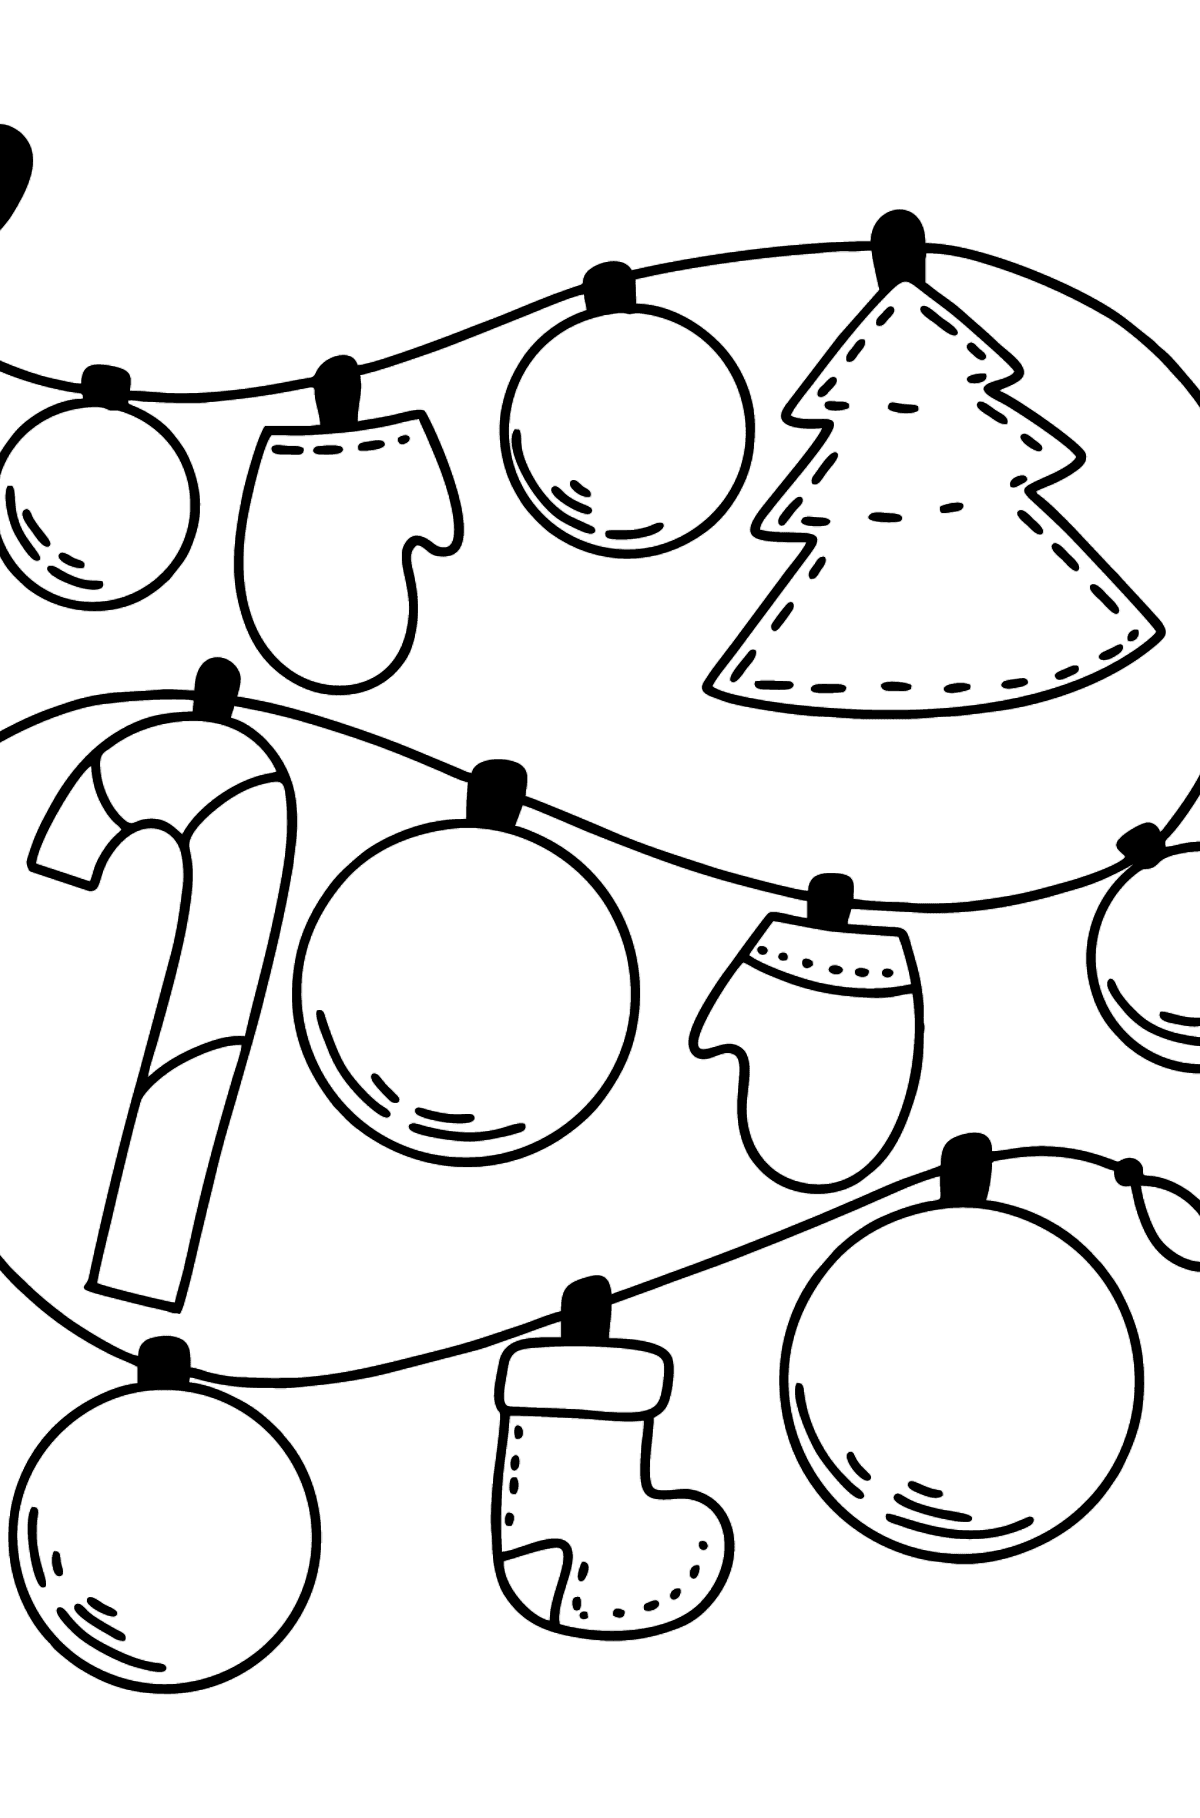 Desenho para colorir de guirlandas de Natal - Imagens para Colorir para Crianças